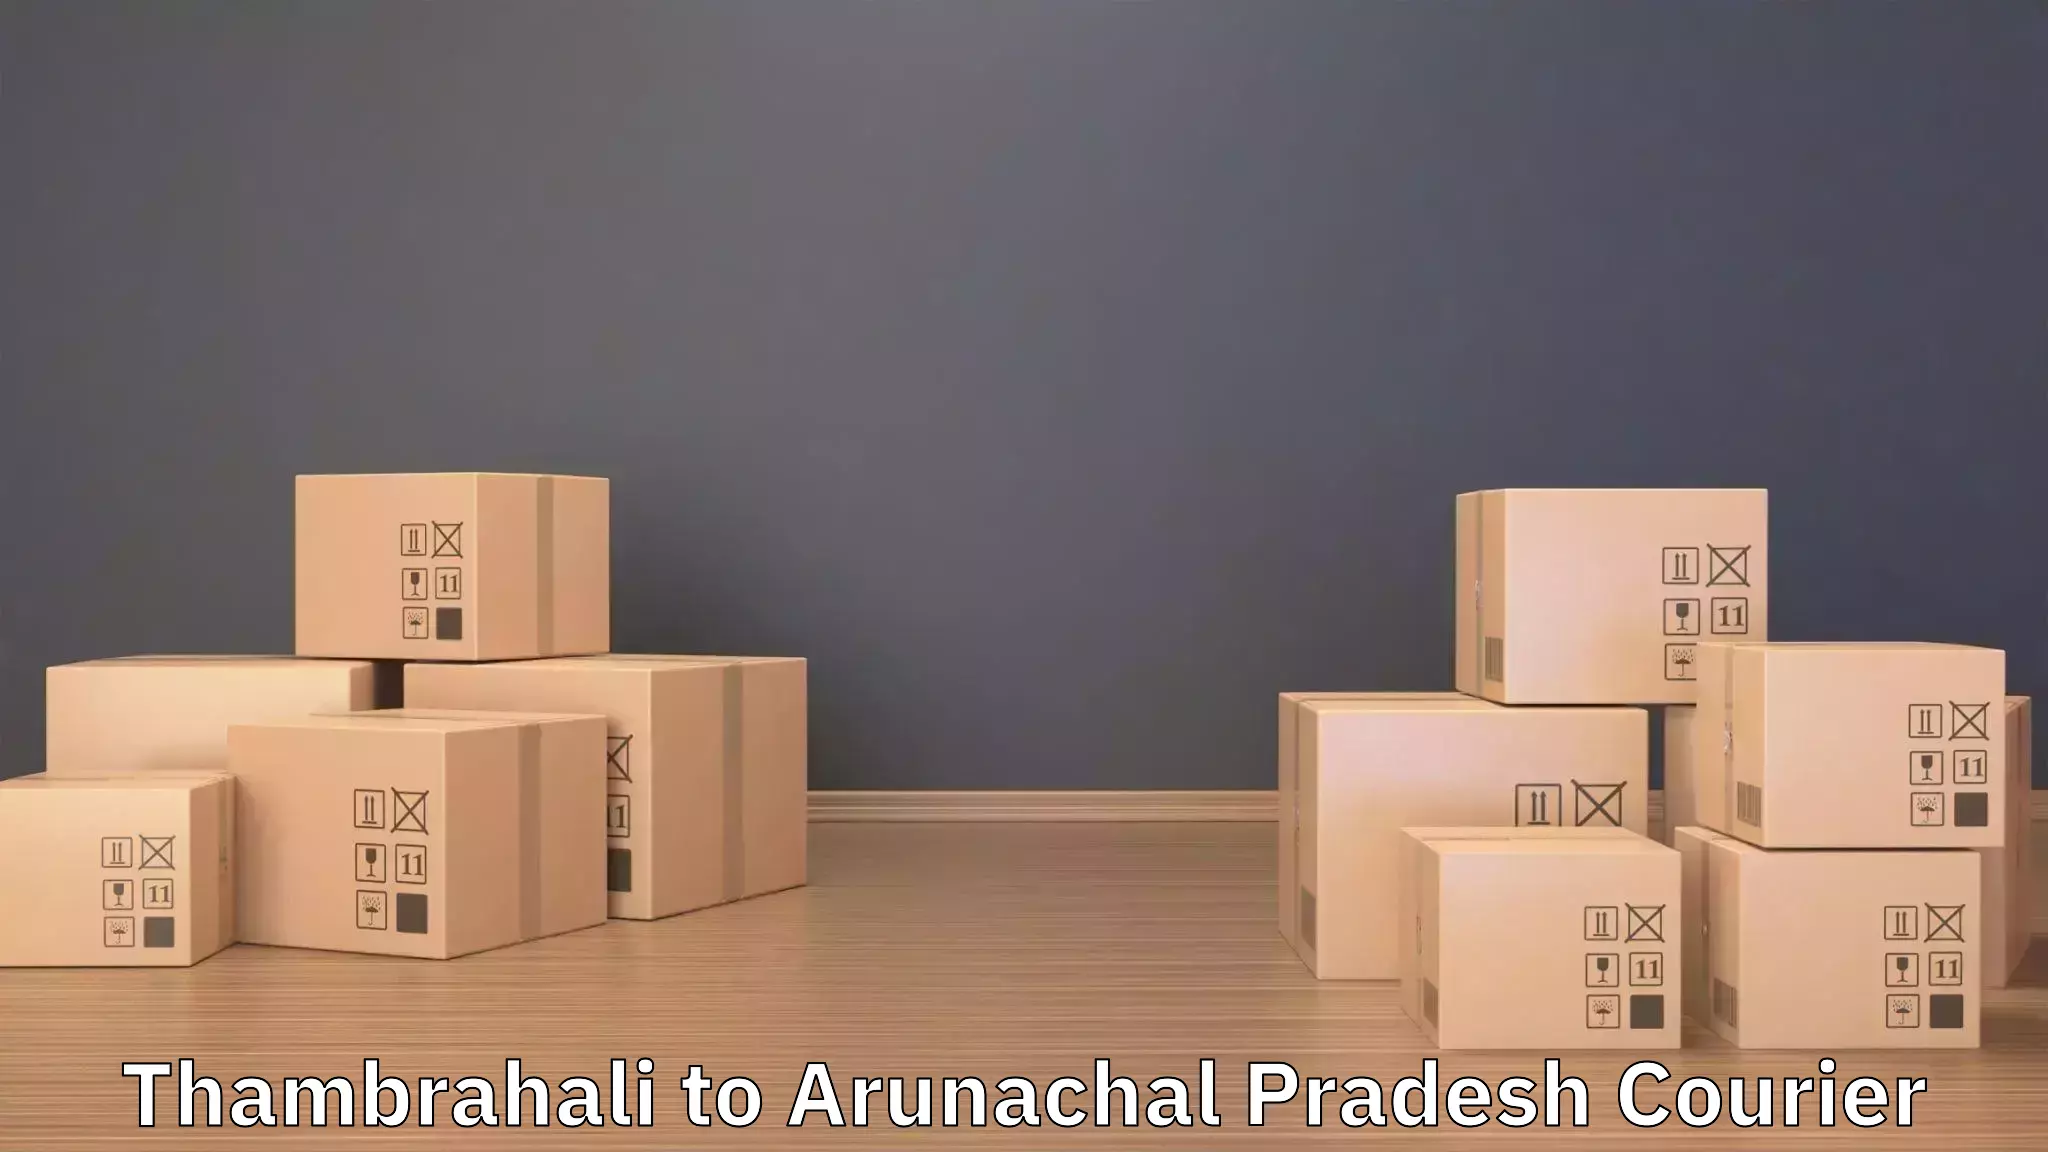 Efficient packing and moving Thambrahali to Kharsang